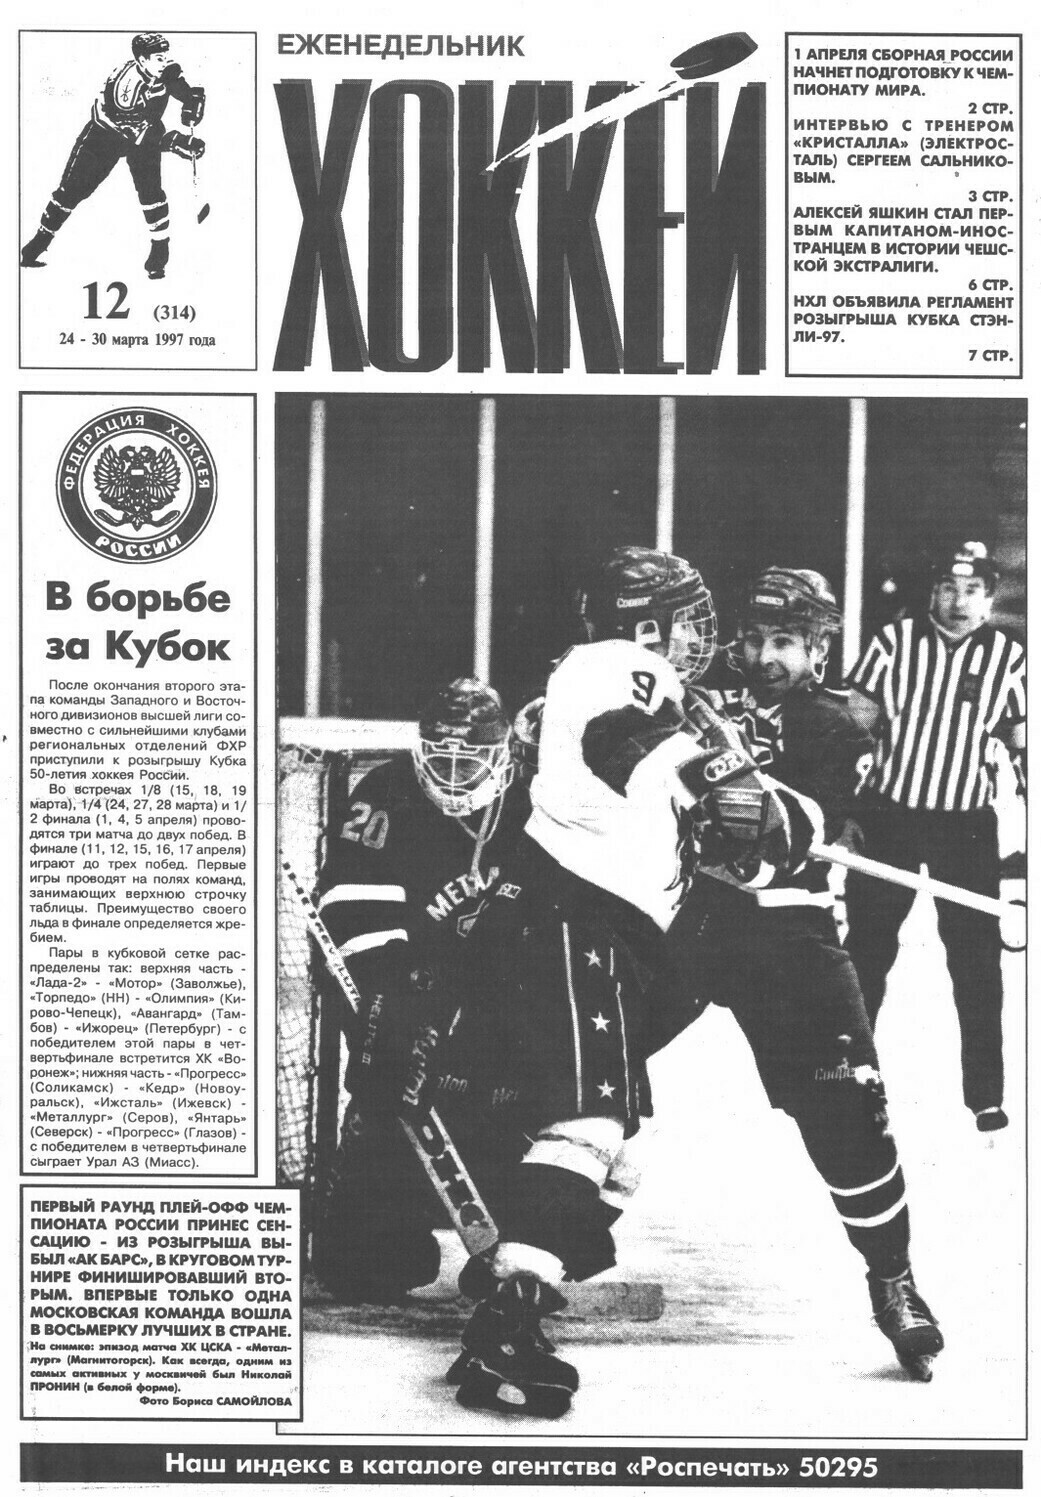 Еженедельник "Хоккей" №314 от 24.03.1997г.